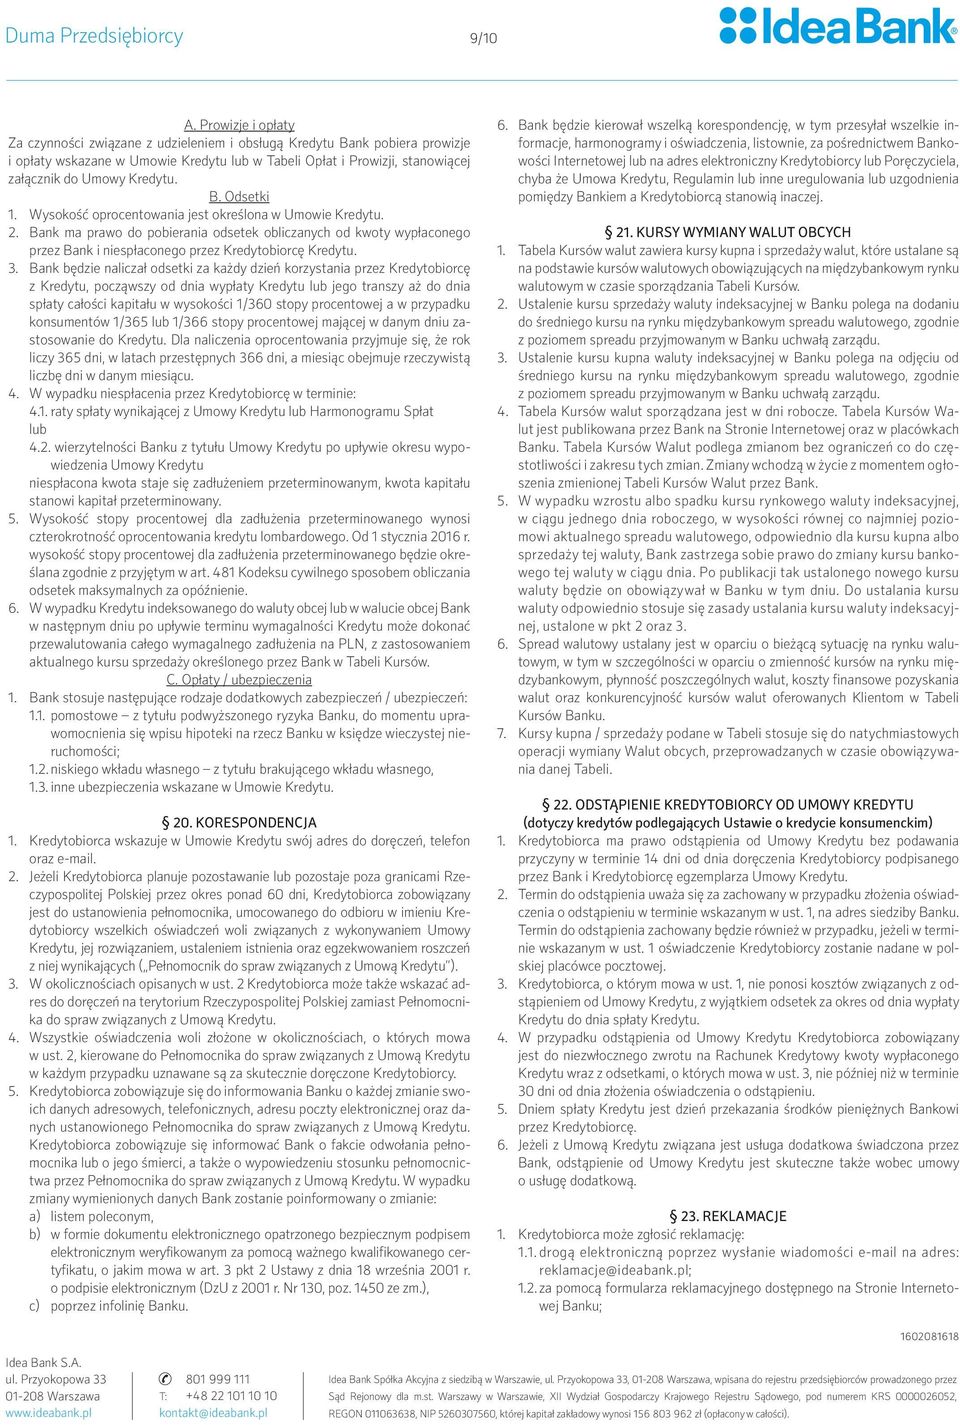 REGULAMIN KREDYTOWANIA IDEA BANK SA (obowiązuje od r.) - PDF Darmowe  pobieranie